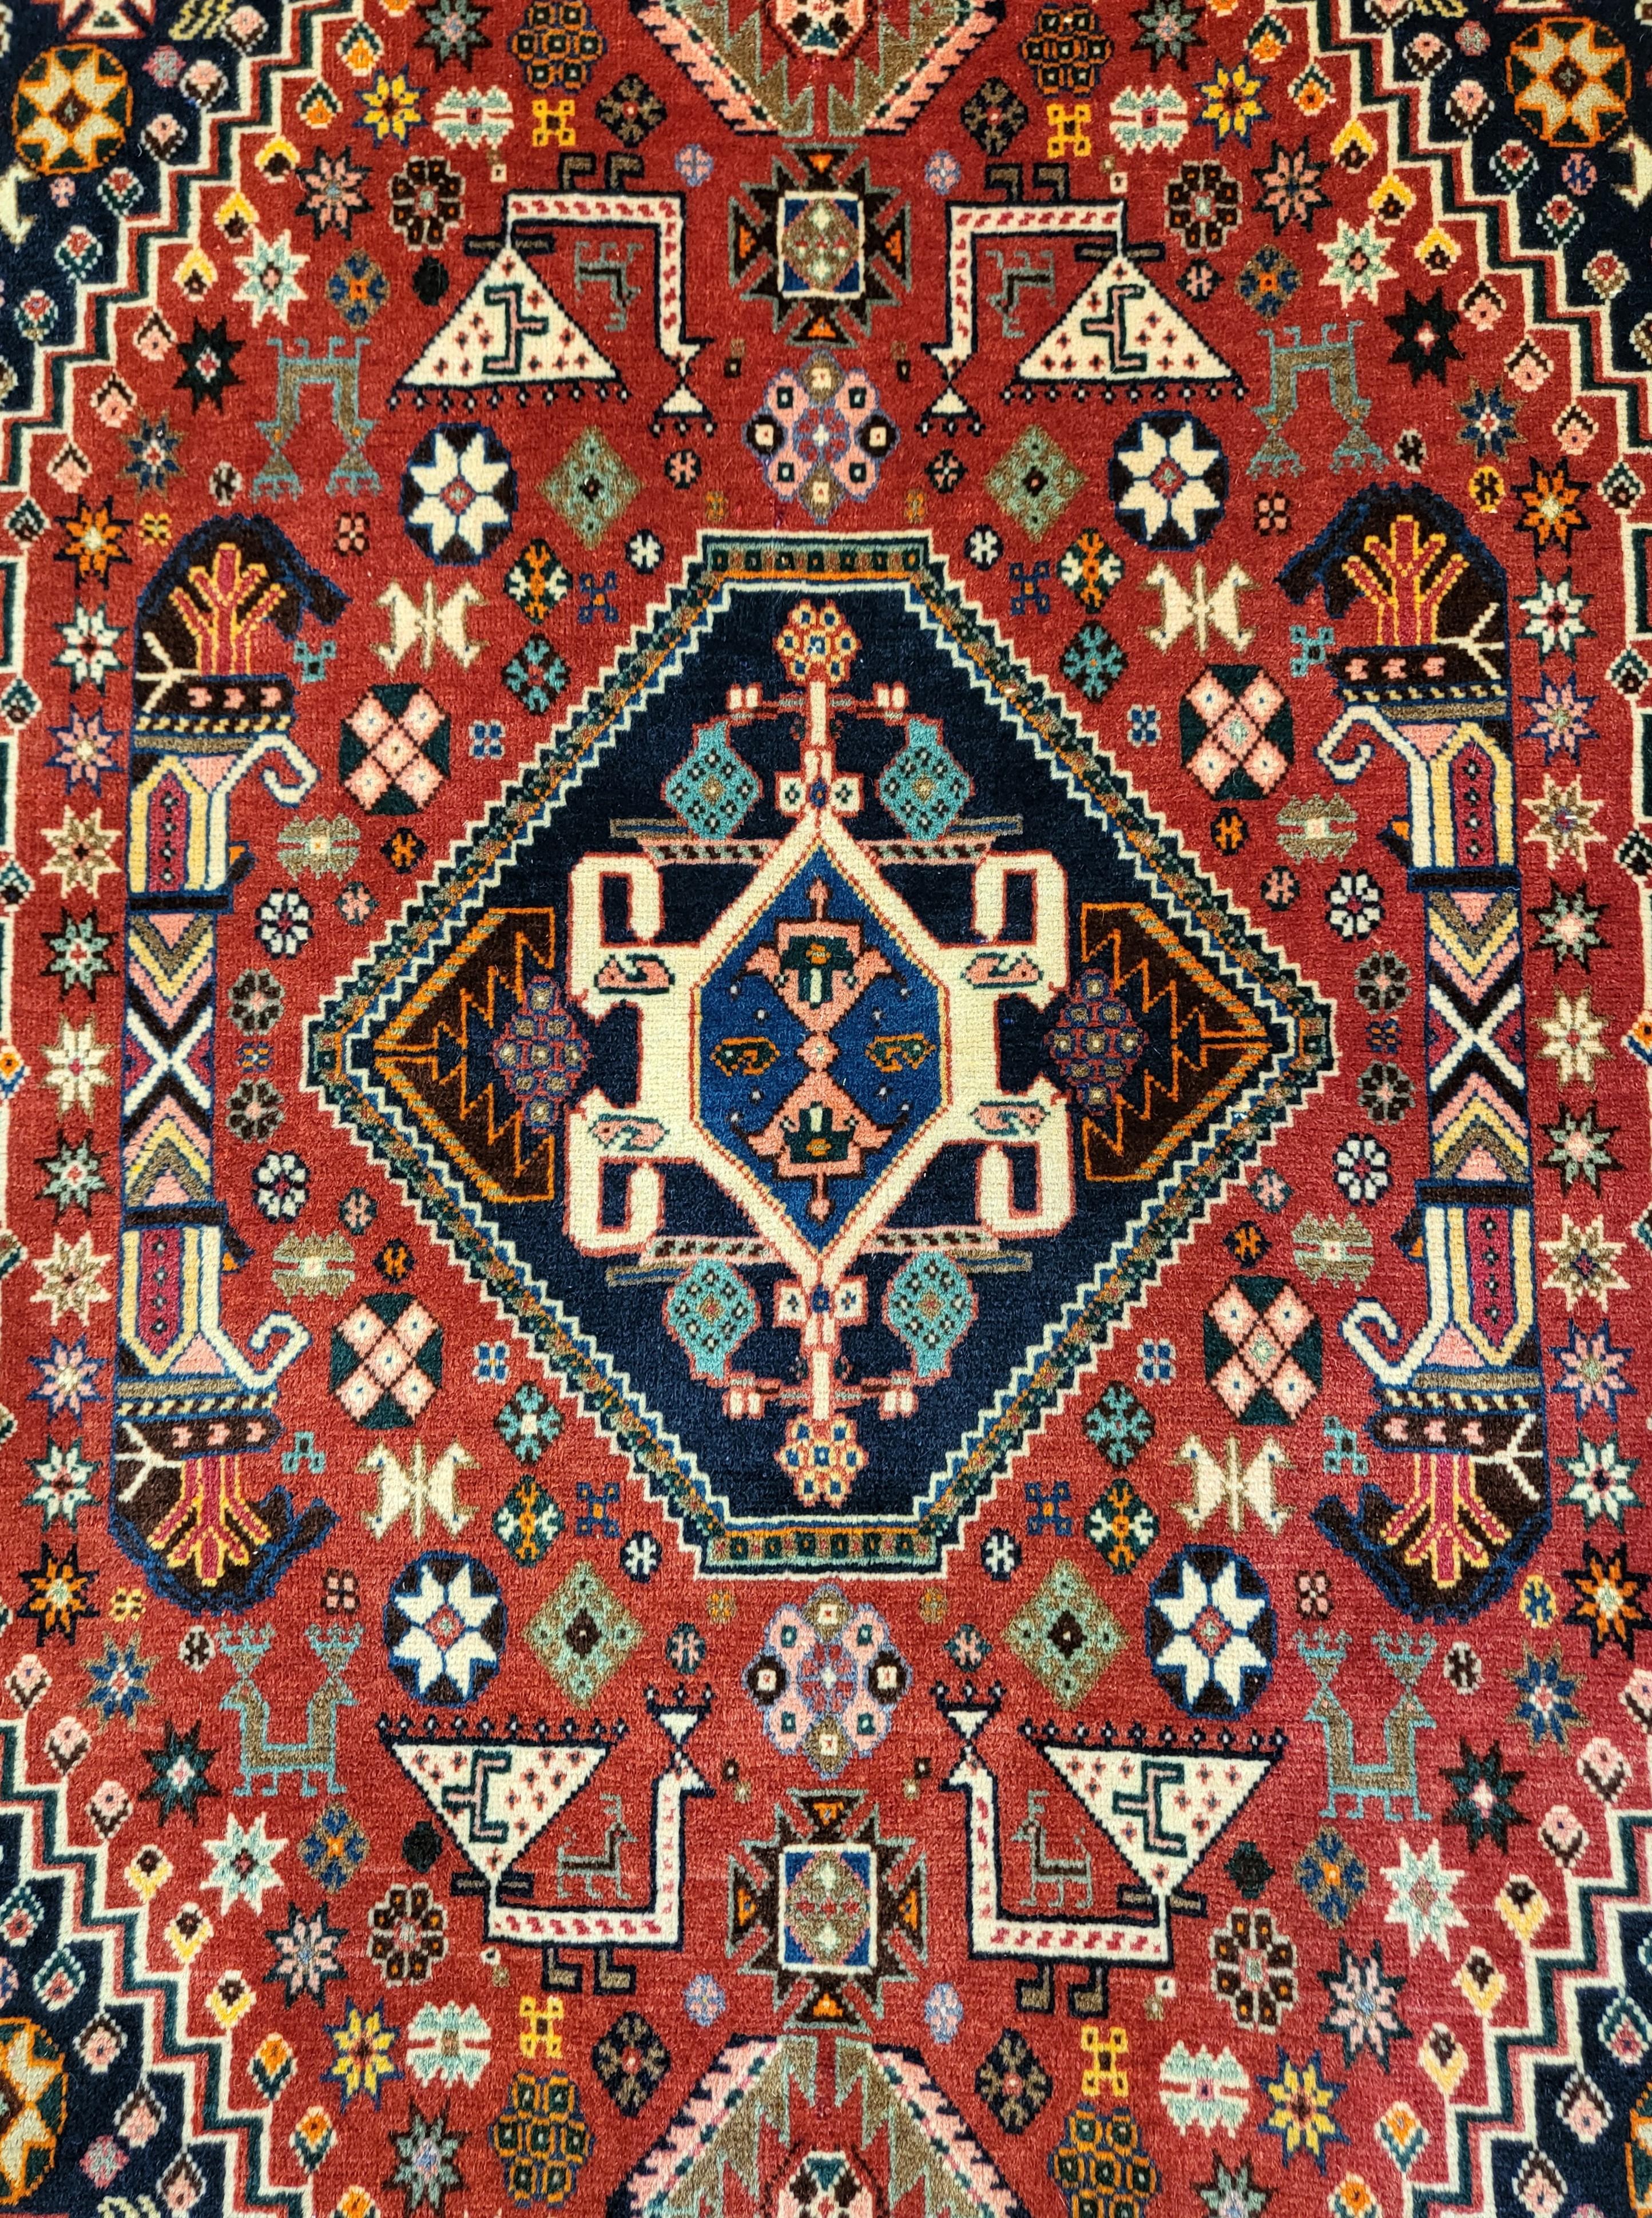 Unglaublich feiner persischer Nafar-Teppich aus den 1960er Jahren

2' 6